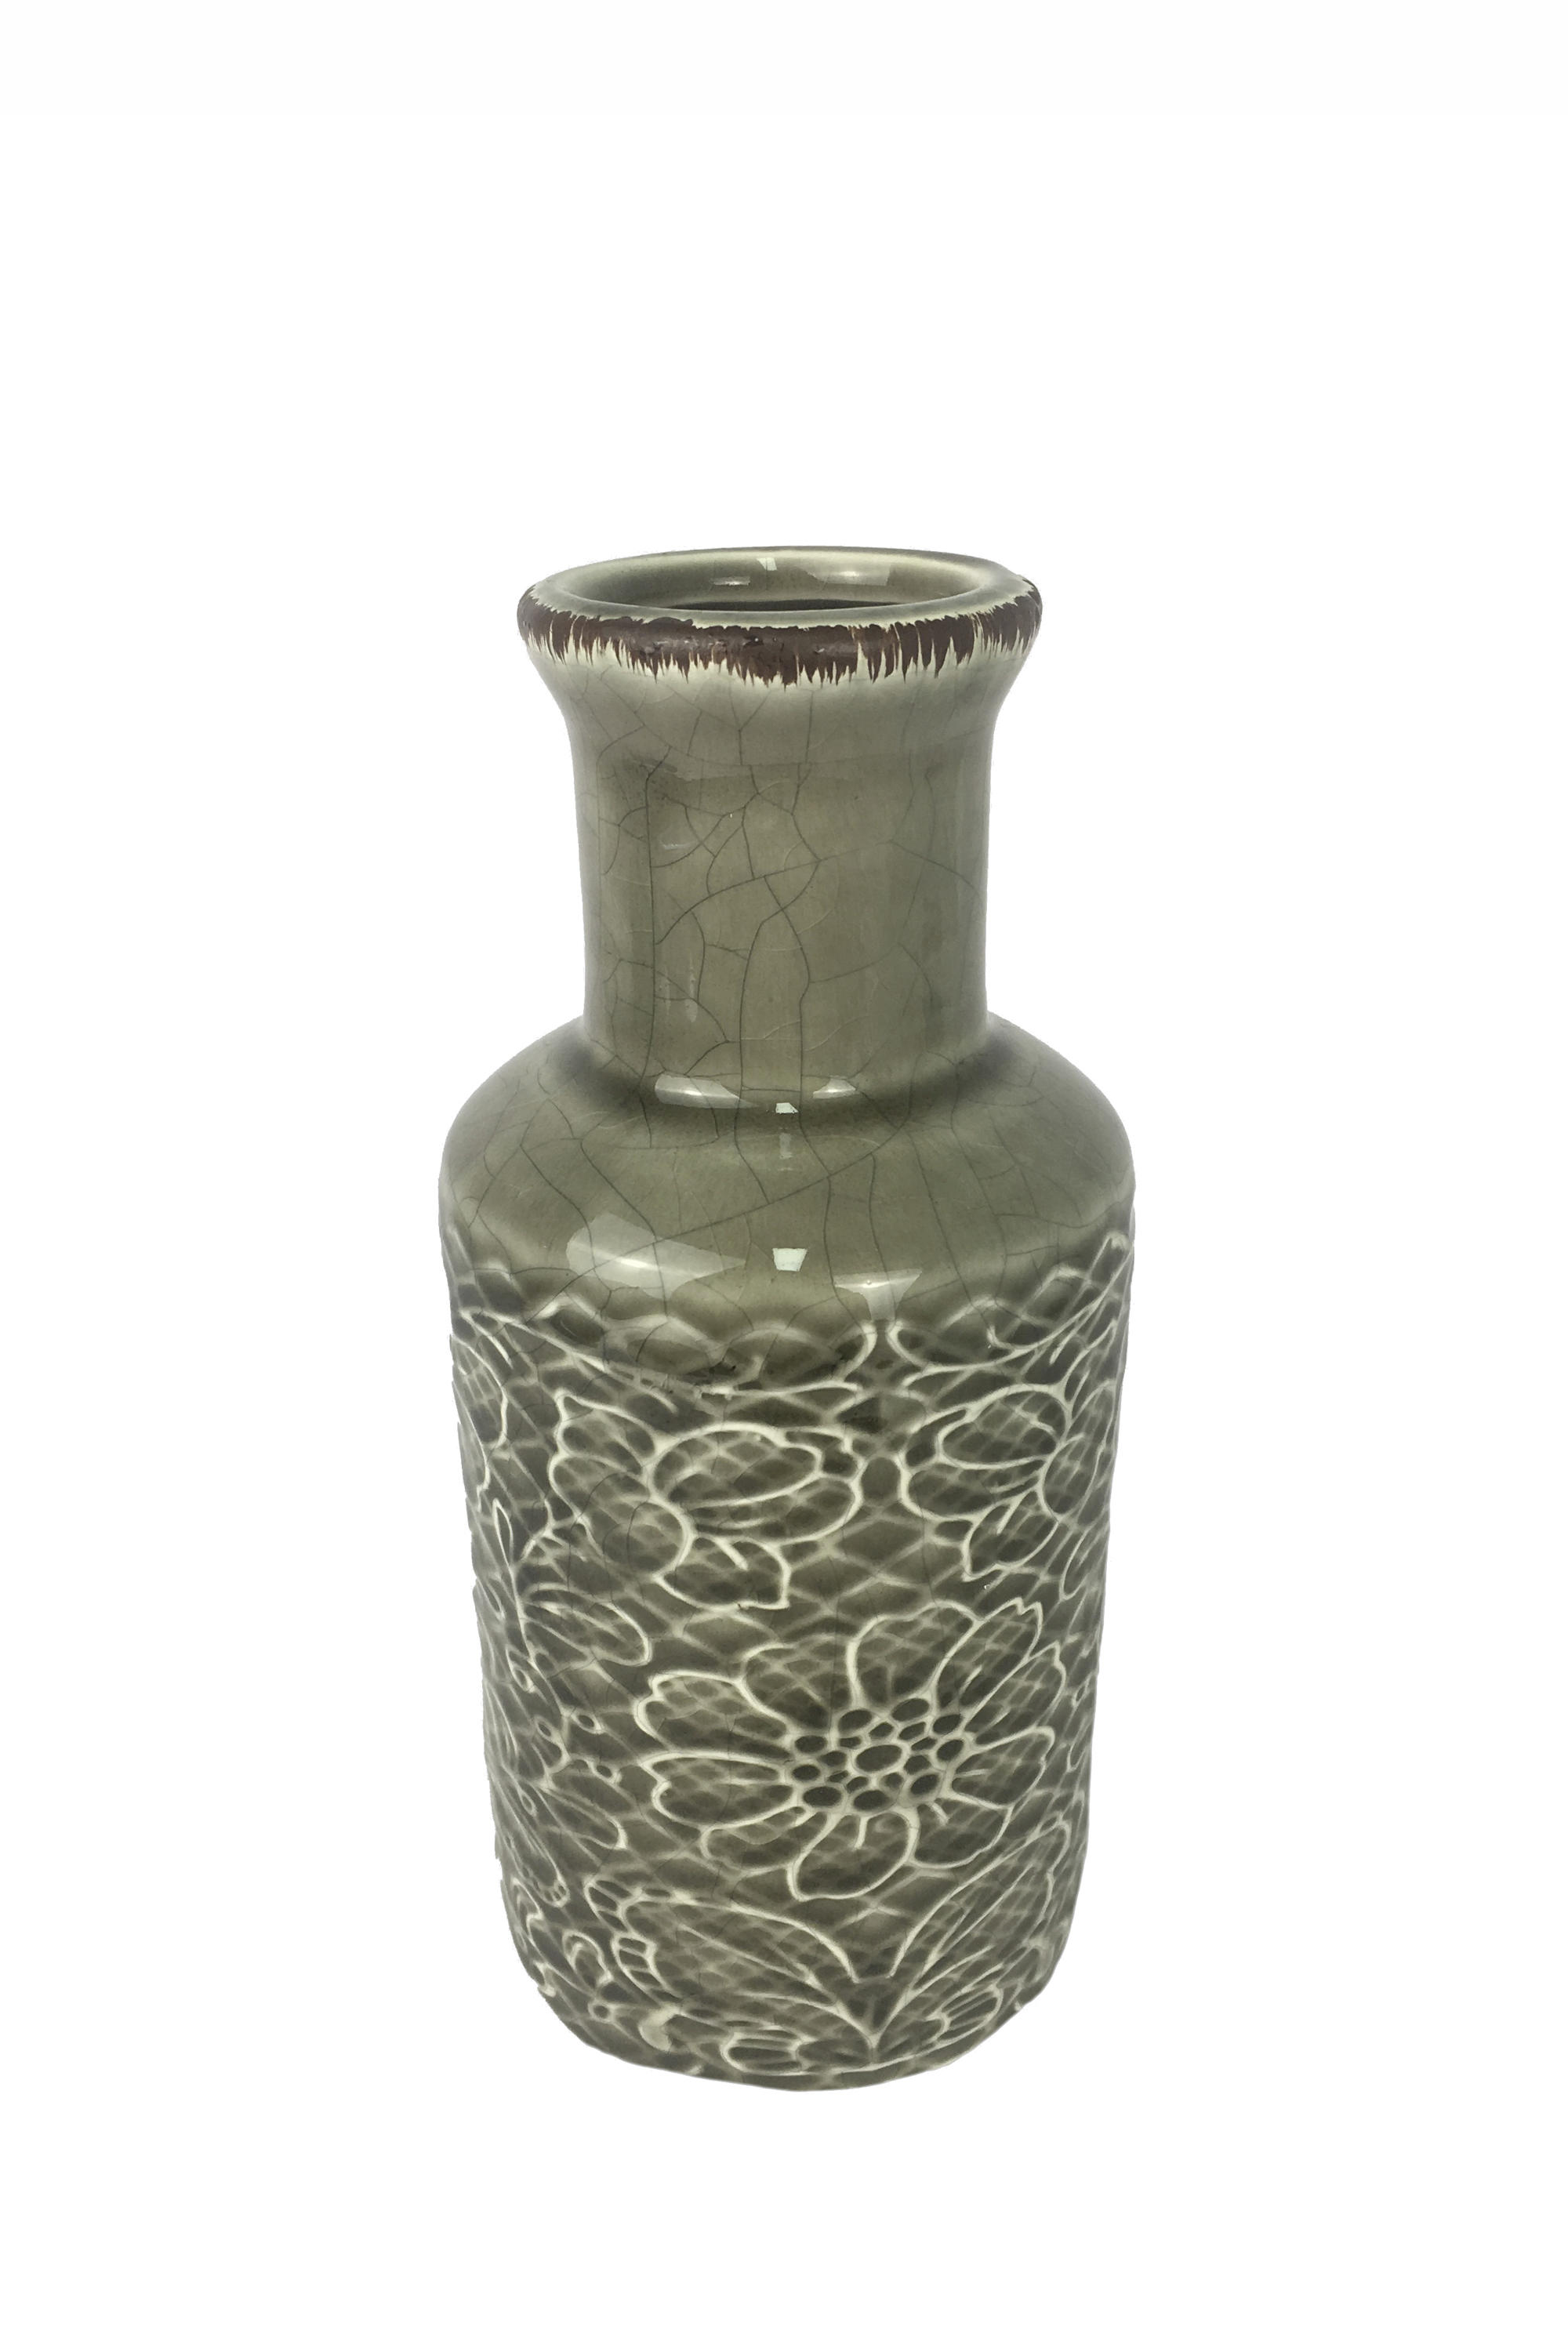 VÁZA, keramika, 18,5 cm - sivá